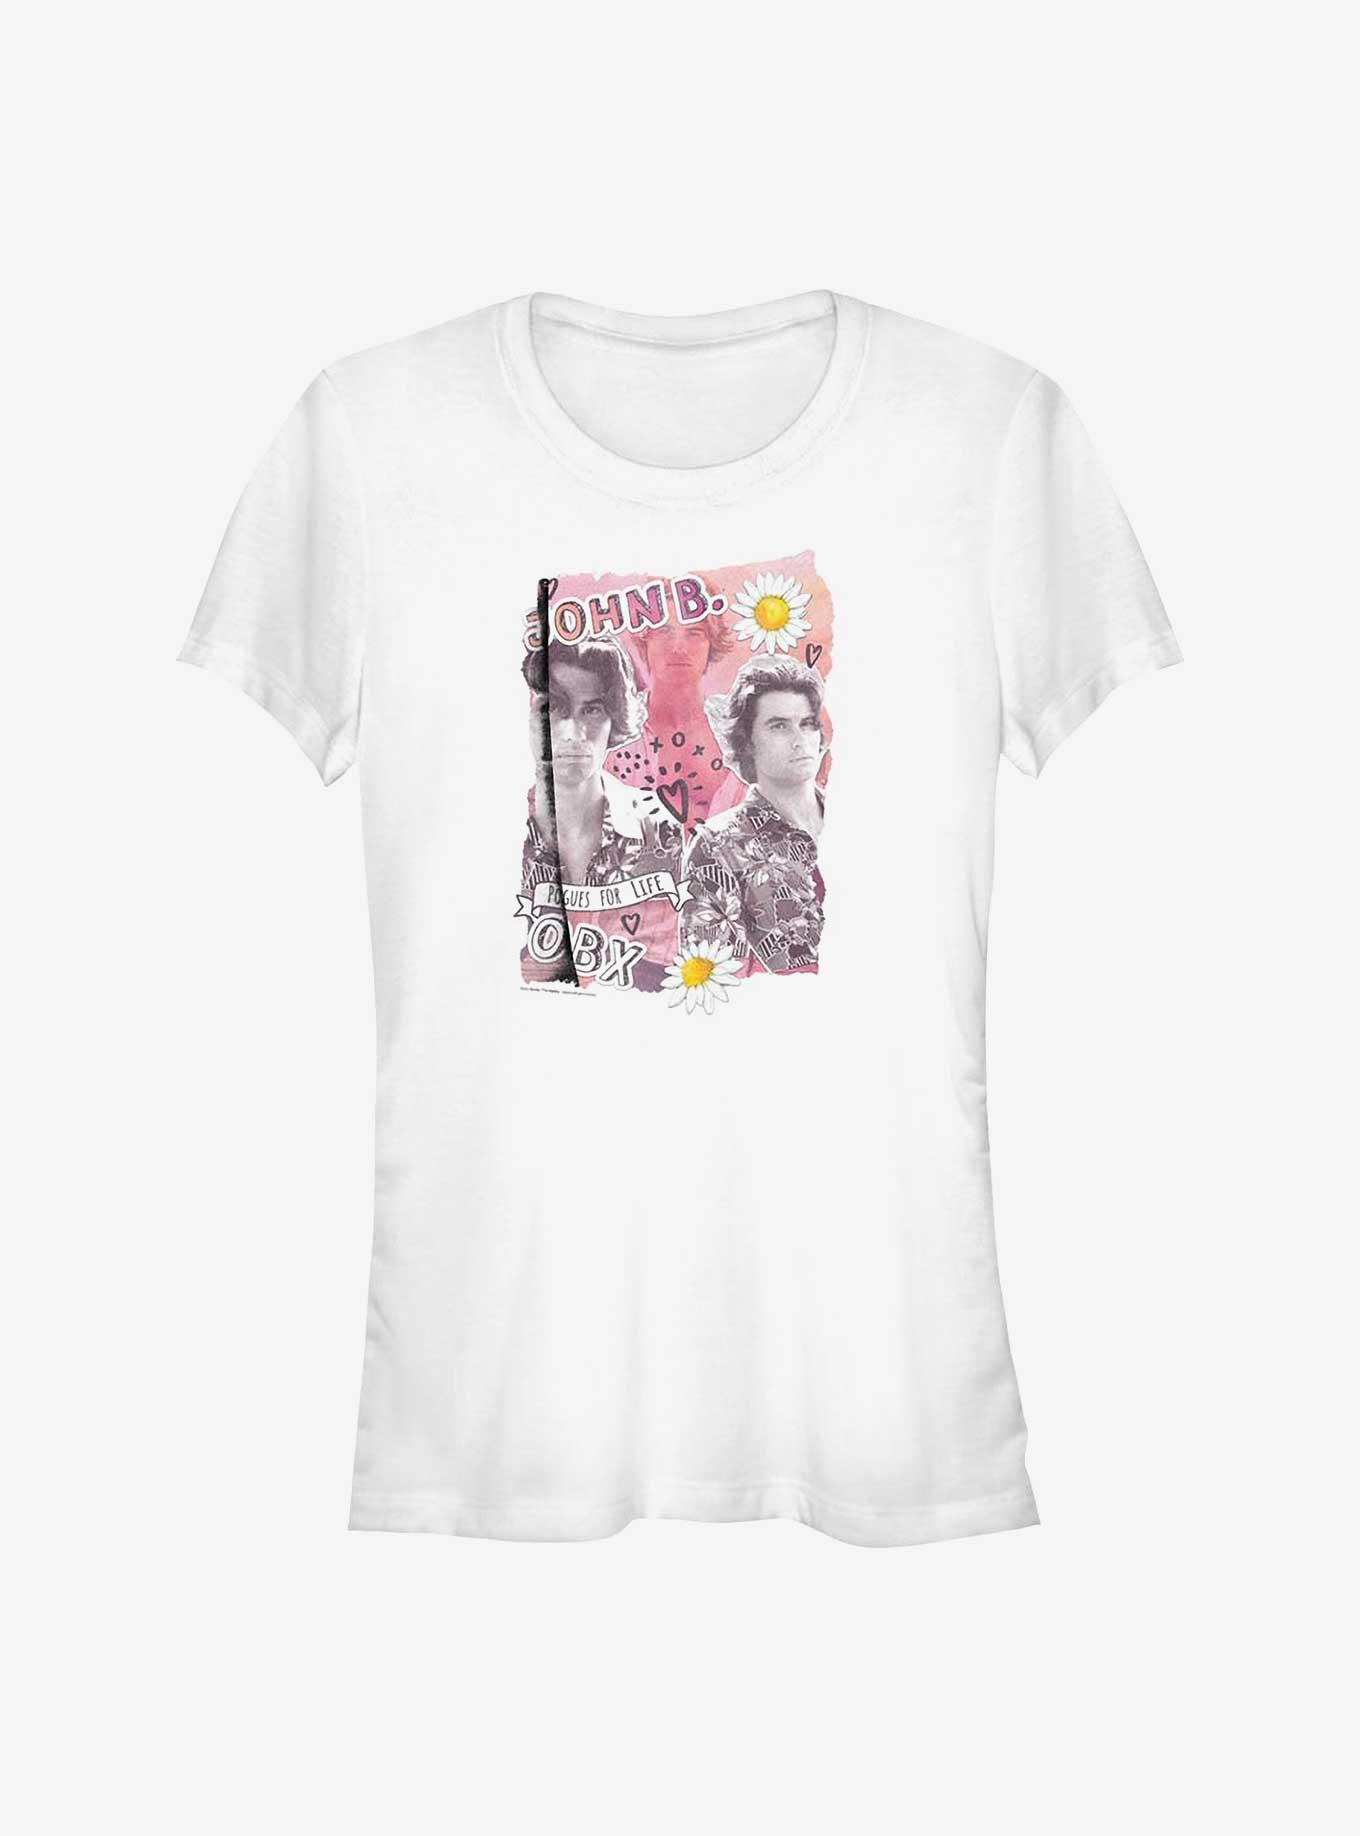 Outer Banks John B. Collage Girls T-Shirt